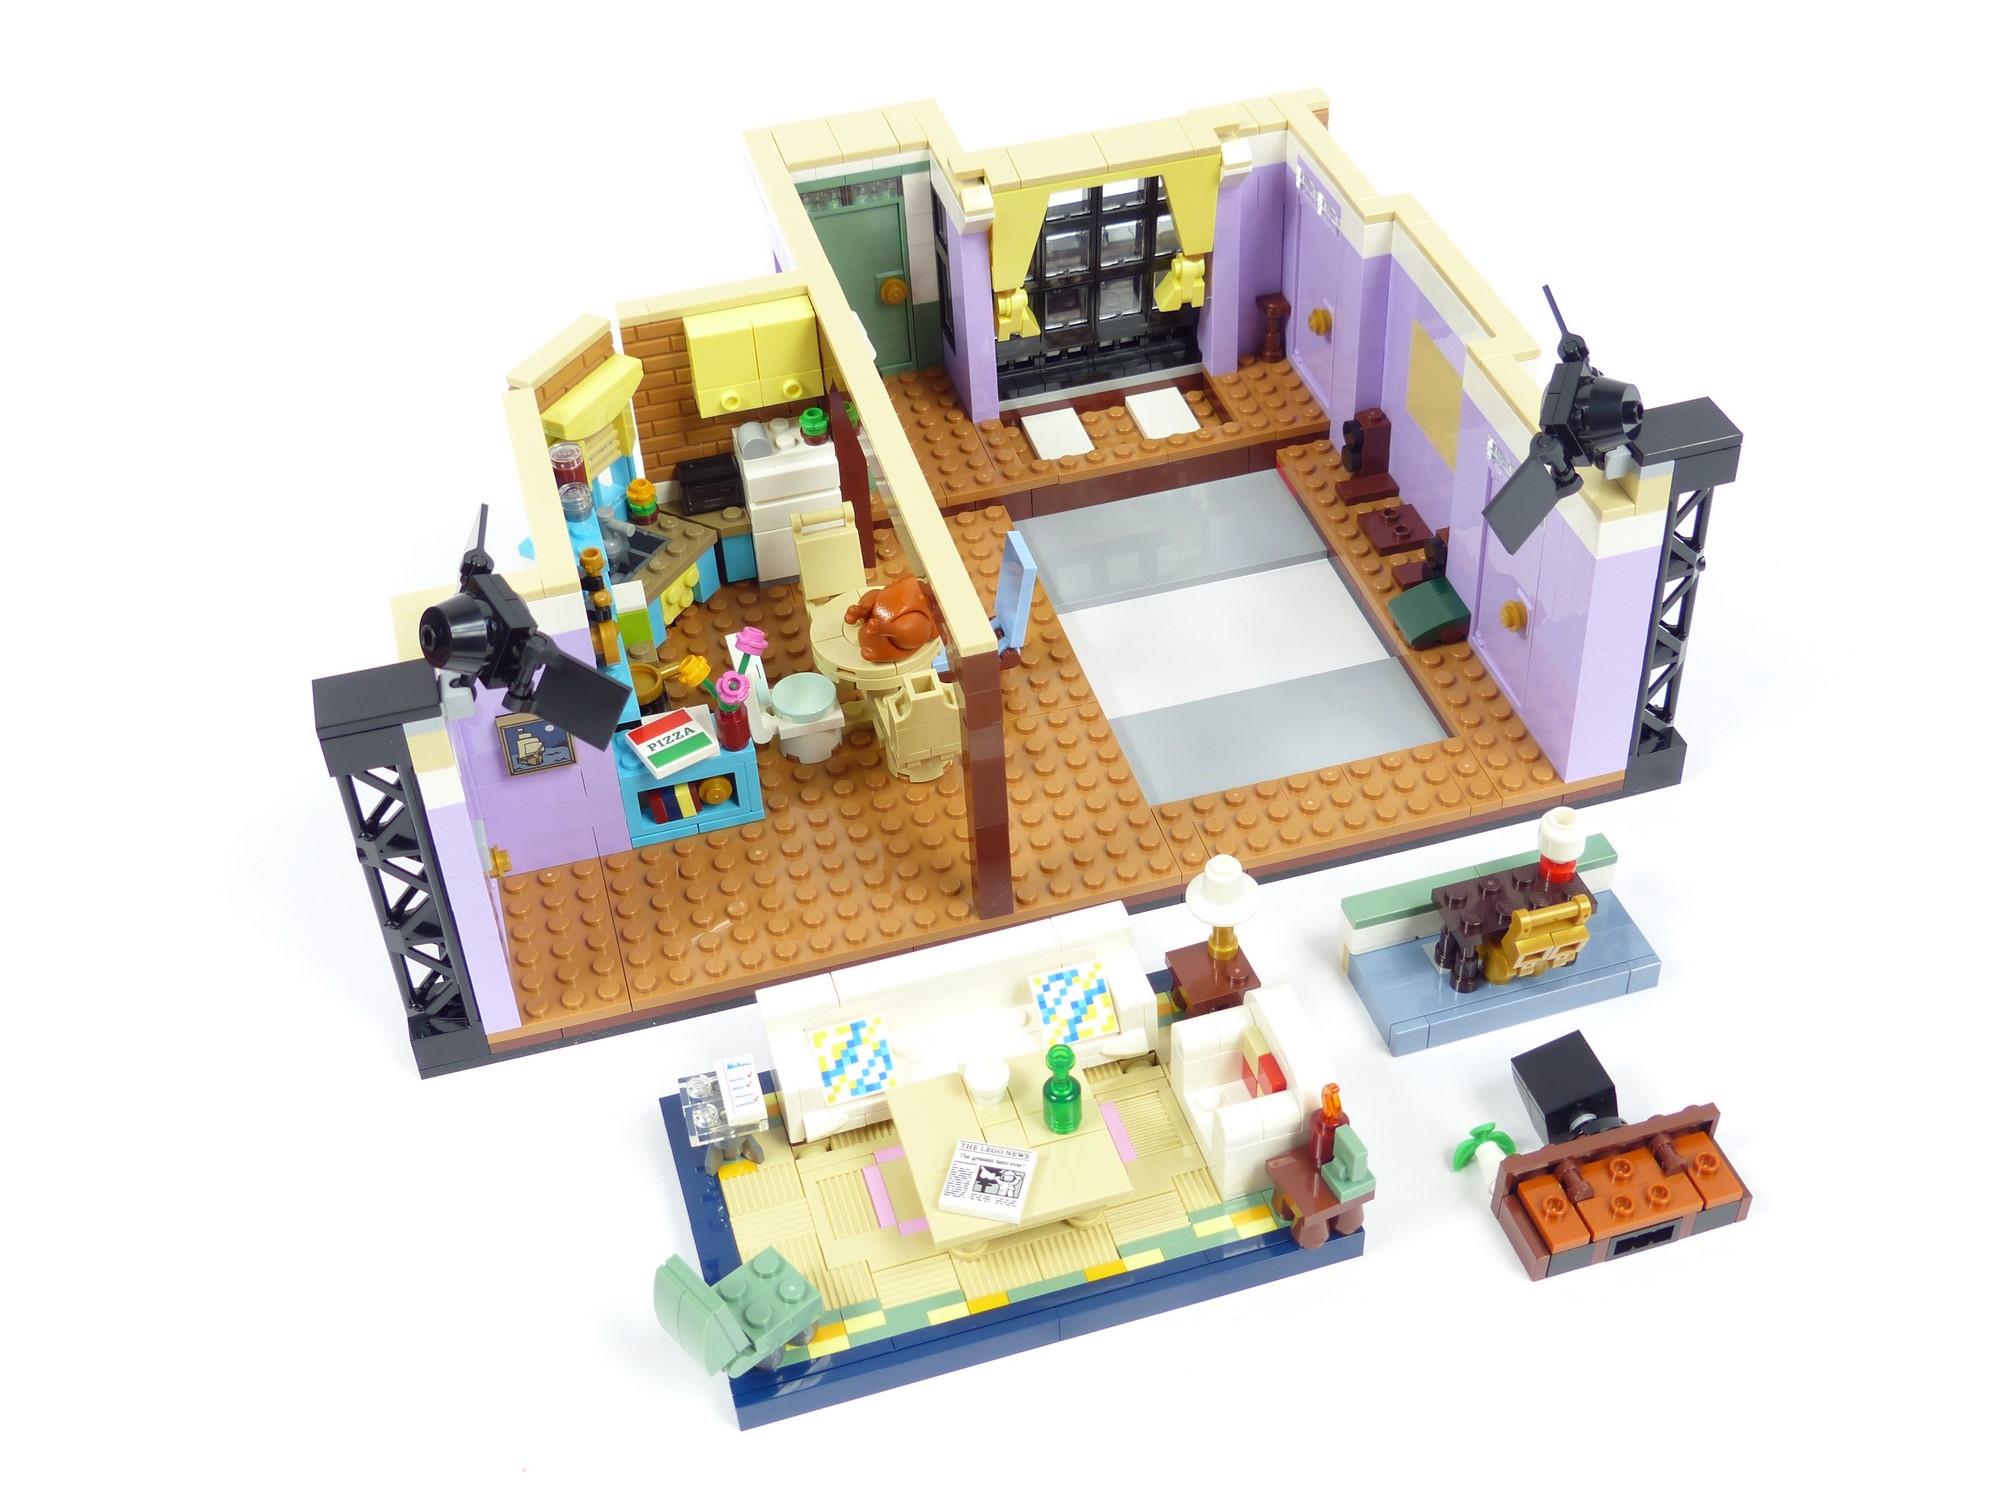 LEGO Les appartements de Friends 10292 Ensemble de construction (2 048  pièces)